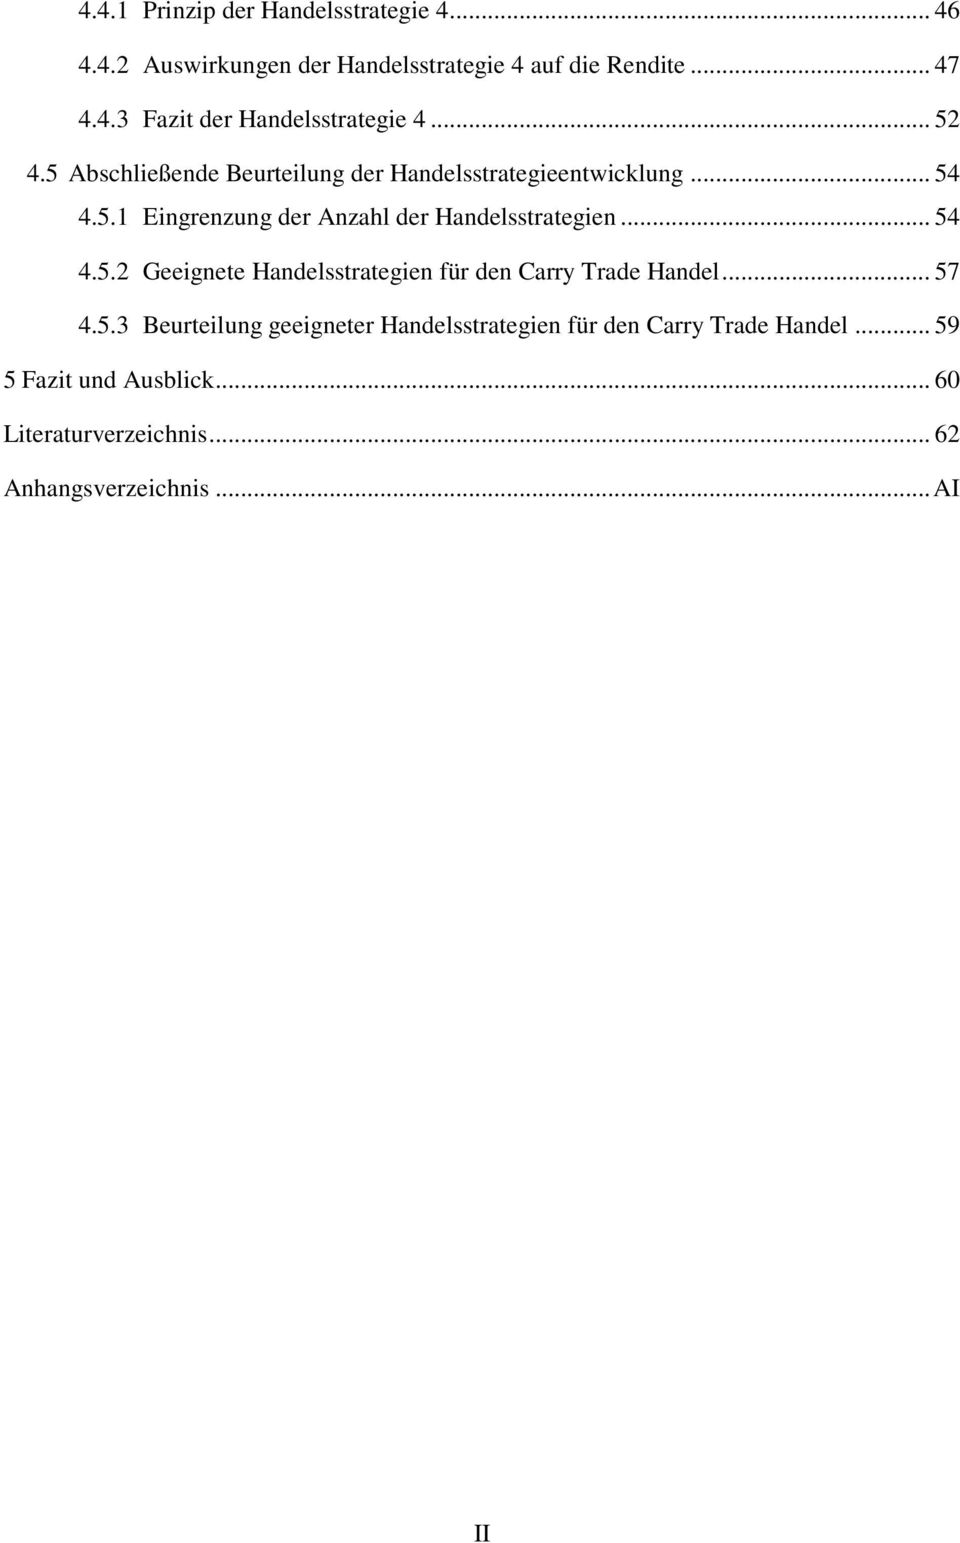 Analyse Und Modellierung Des Carry Trade Handels Bachelorarbeit Pdf